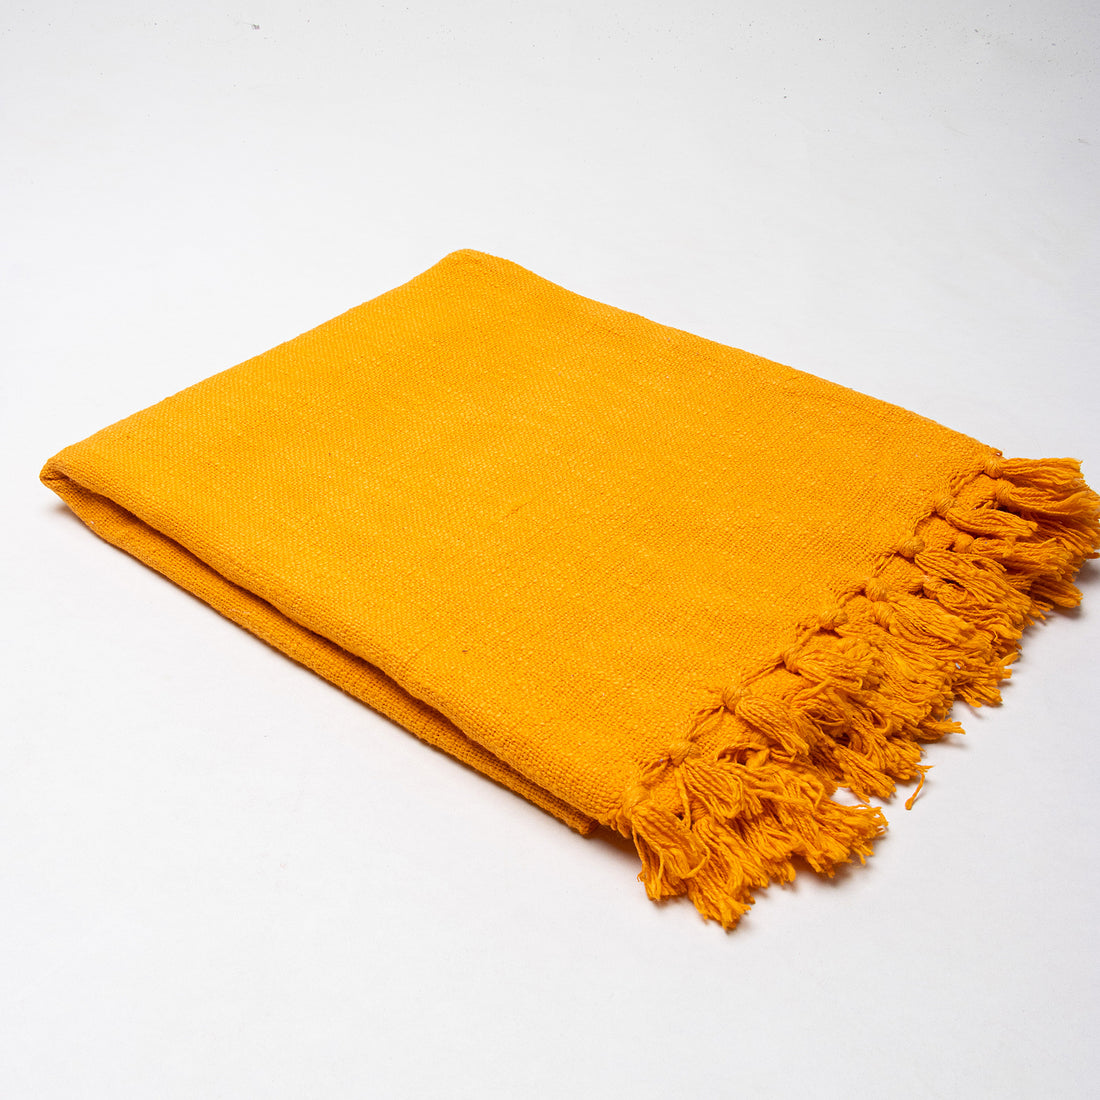 Premium Soft Orange Solid Throw Cotton